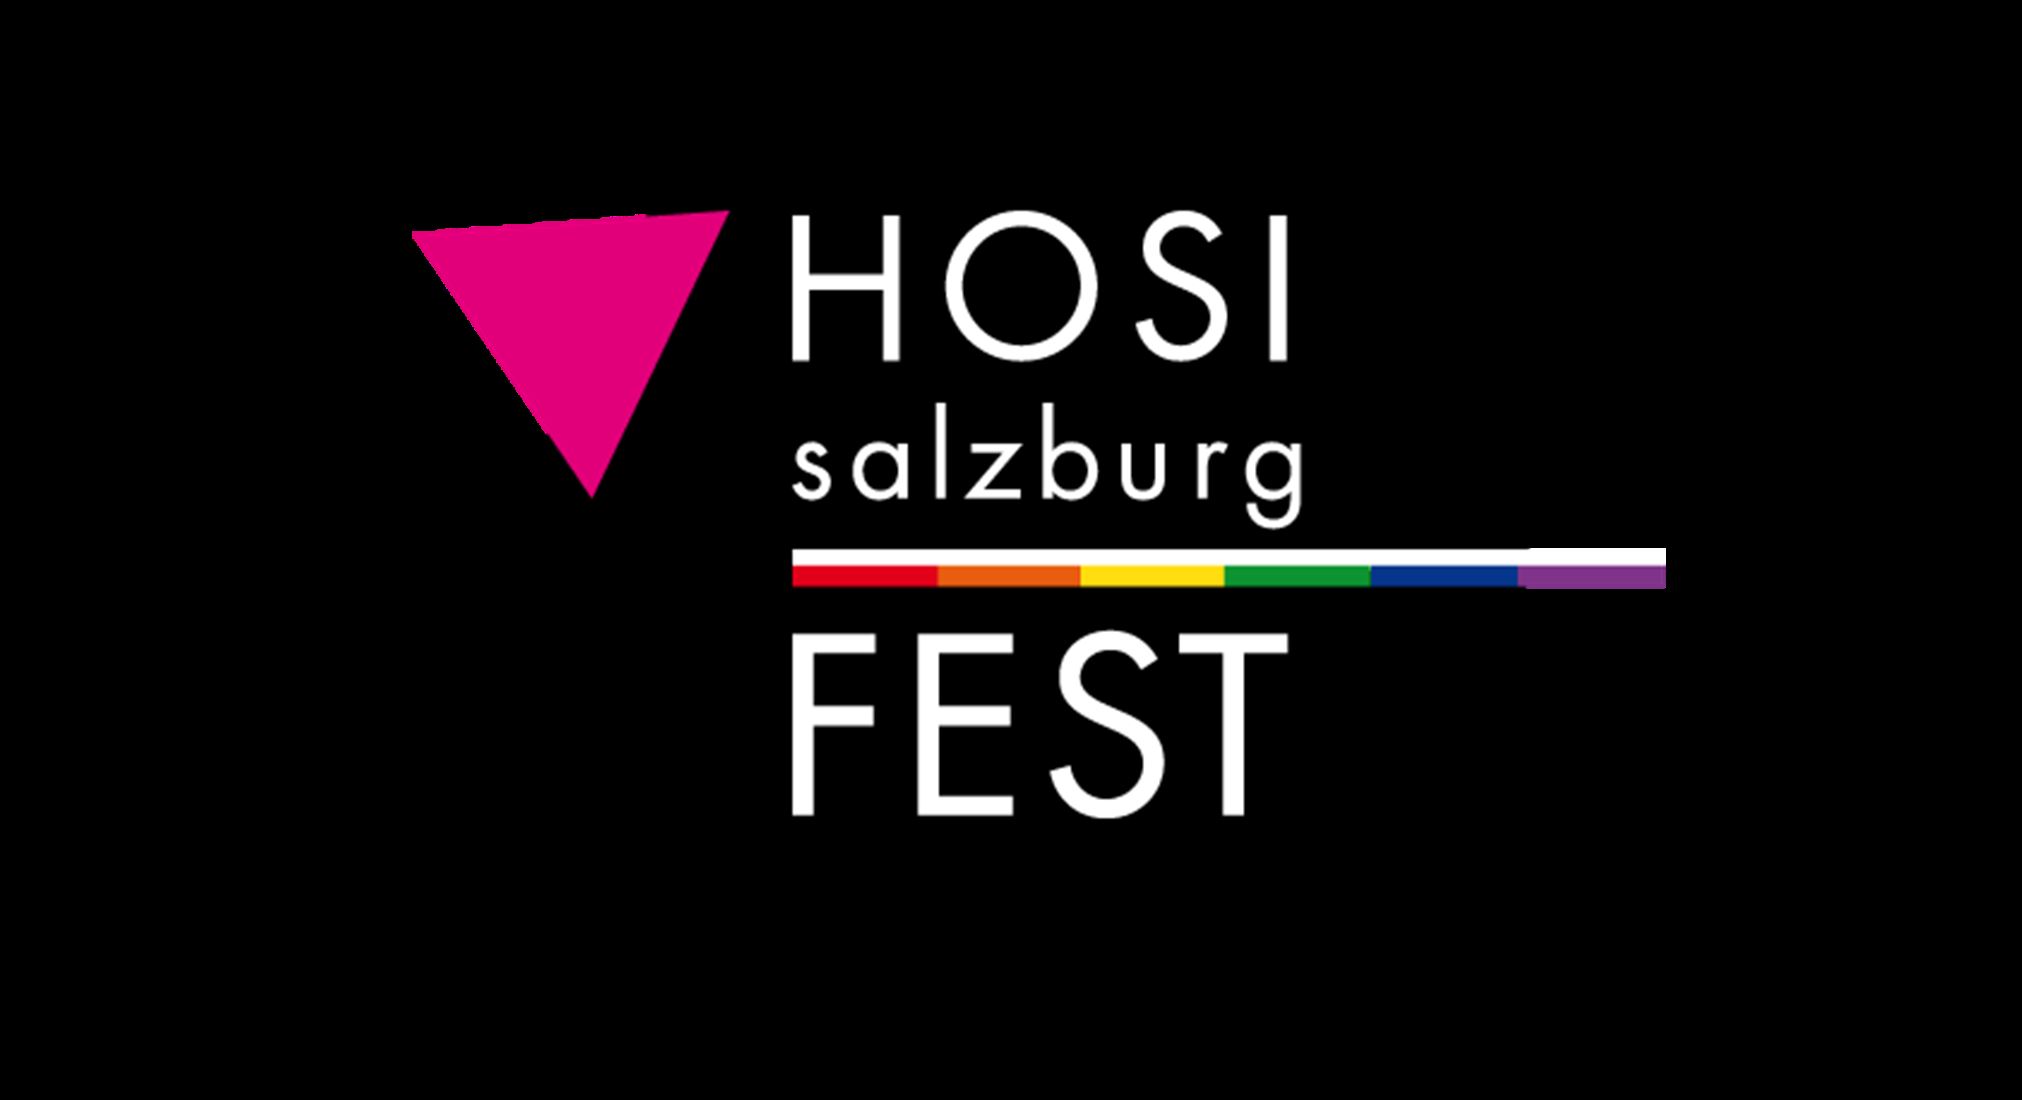 HOSI FEST - ABGESAGT! am 14.3.2020 um 21:00 Uhr